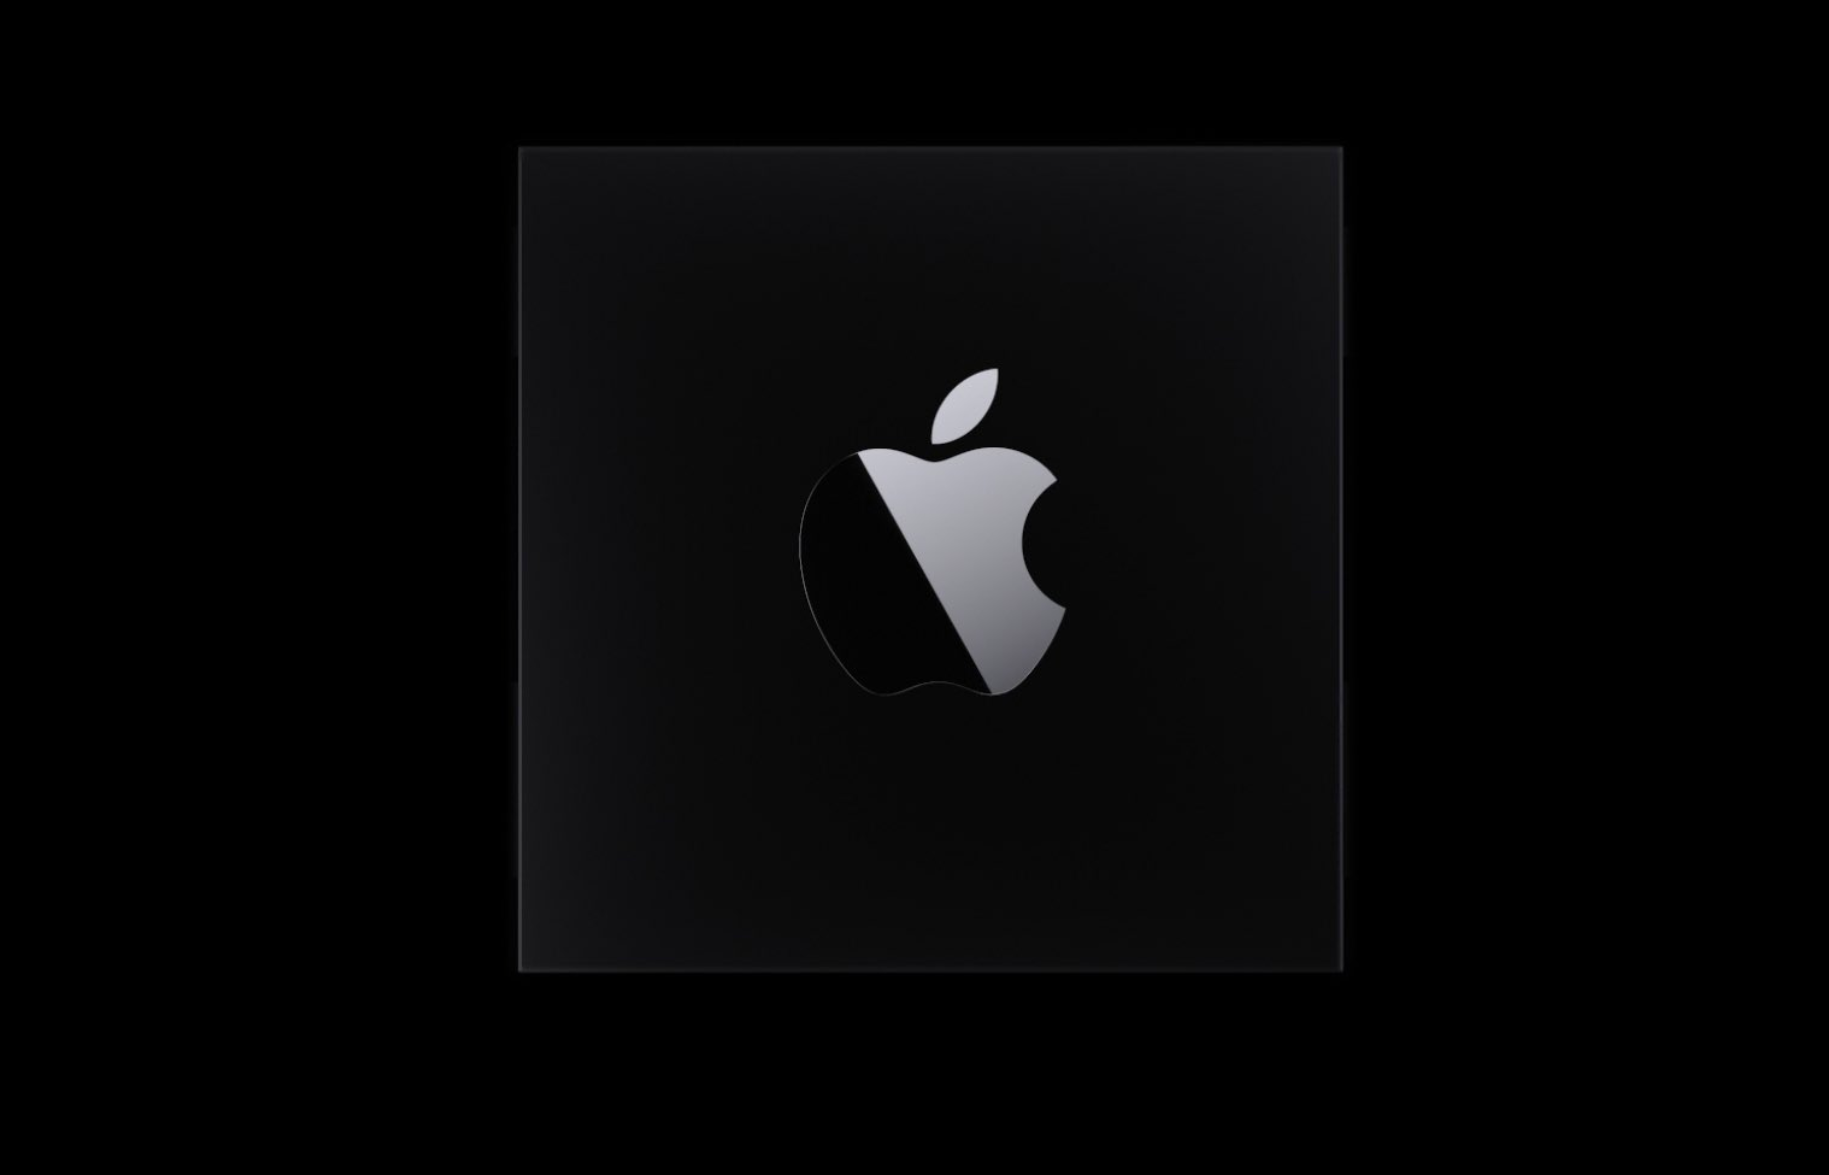 Apple đang chuyển đổi các máy tính Mac sang chip chính hãng, bắt đầu từ  cuối năm 2020 - Blogs các sản phẩm công nghệ 